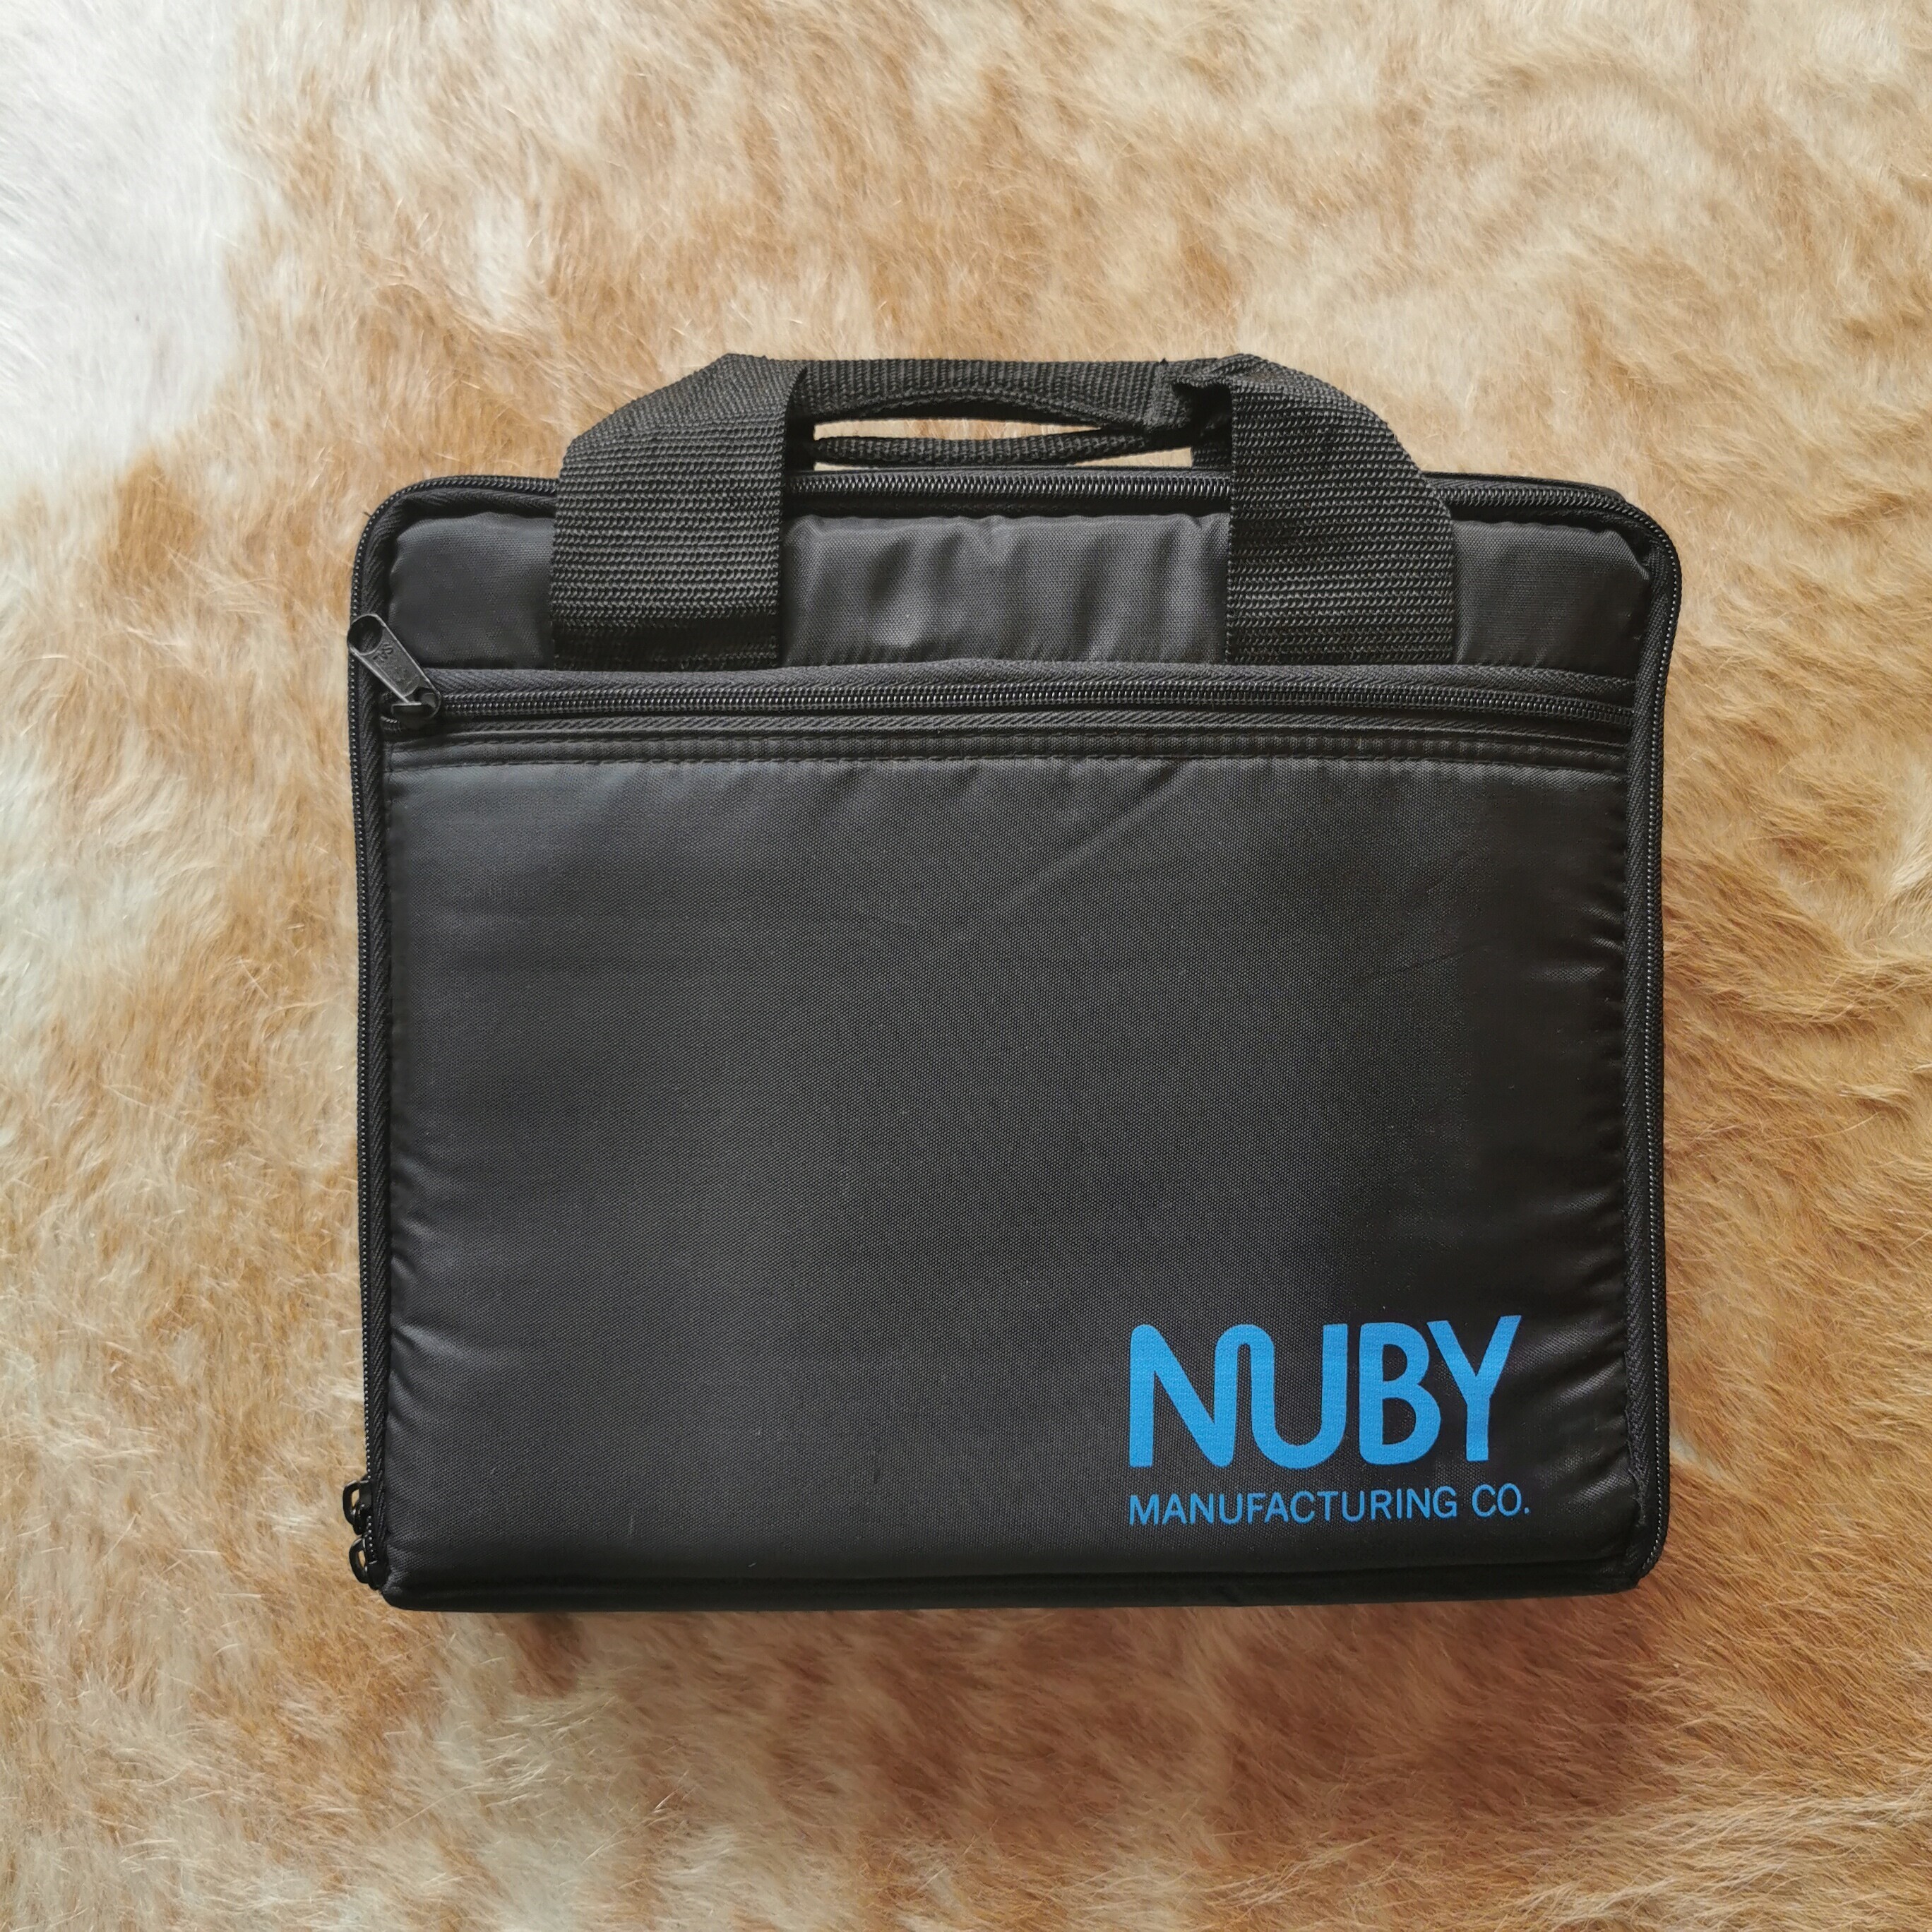  Nuby Game Boy  Attaché